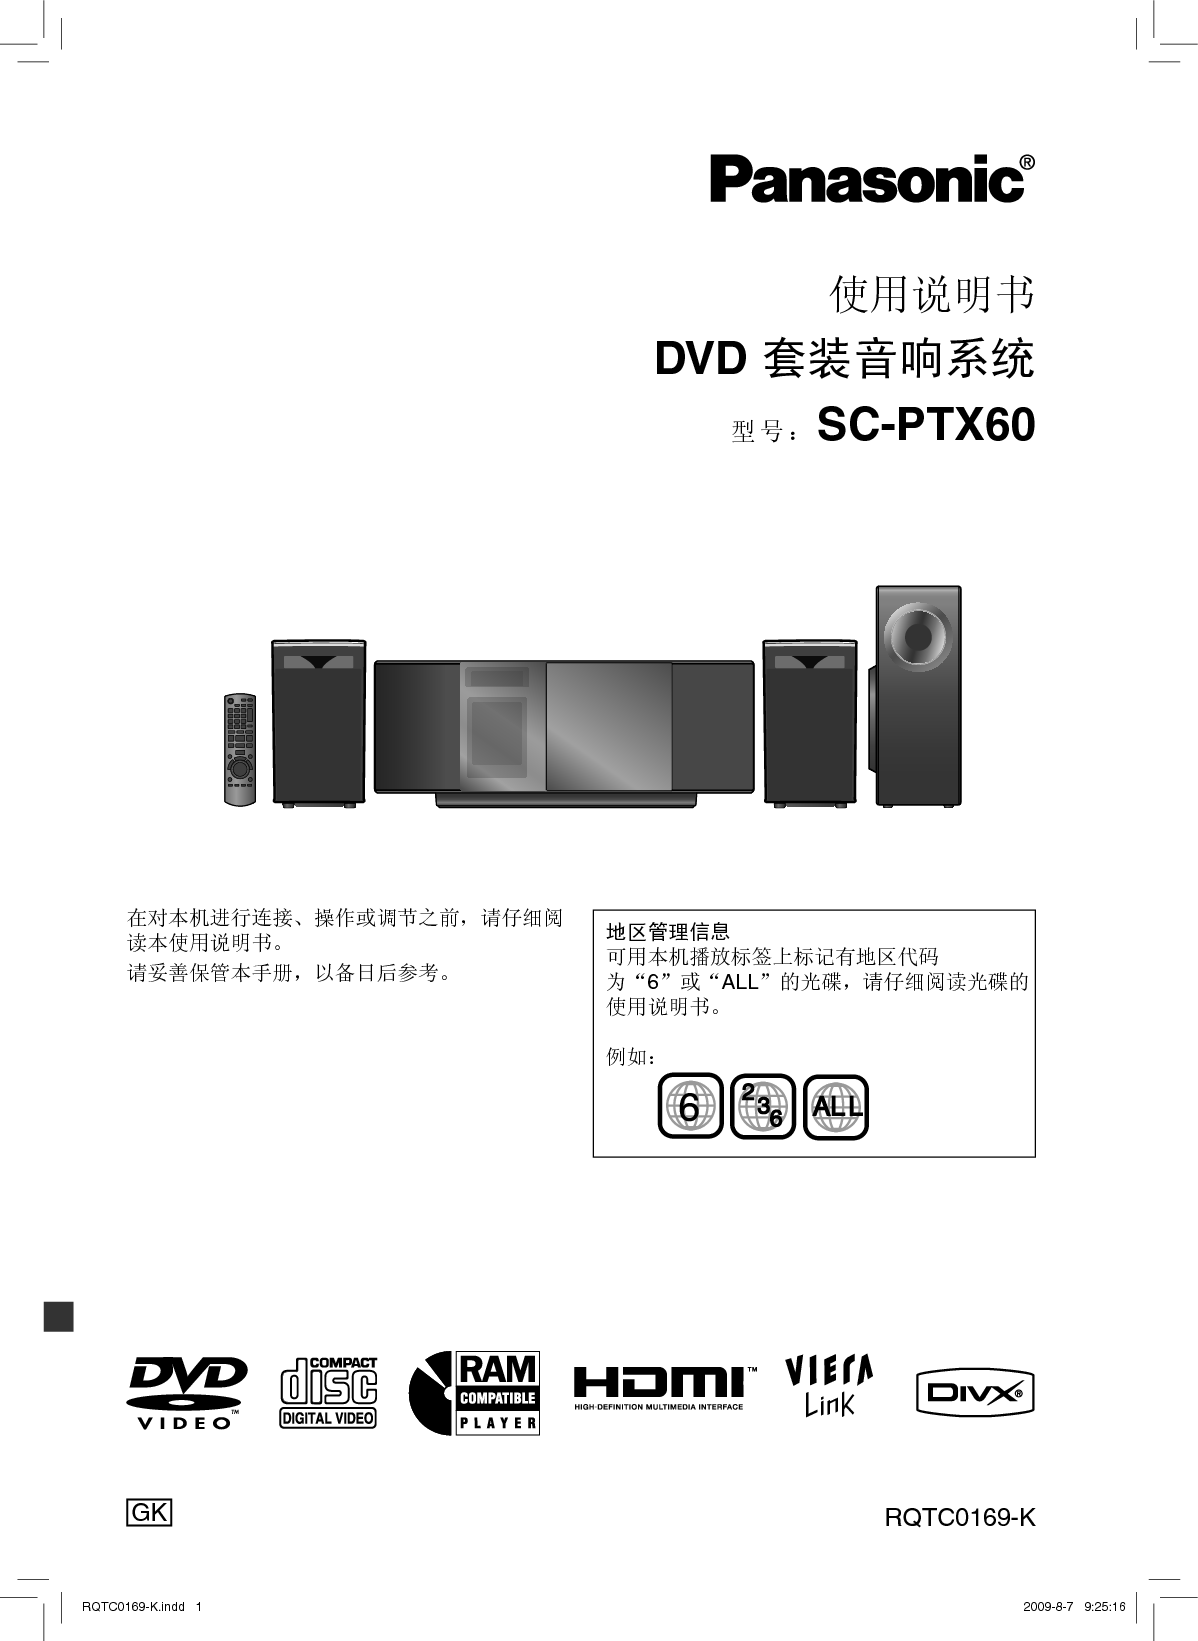 松下 Panasonic SC-PTX60 说明书 封面